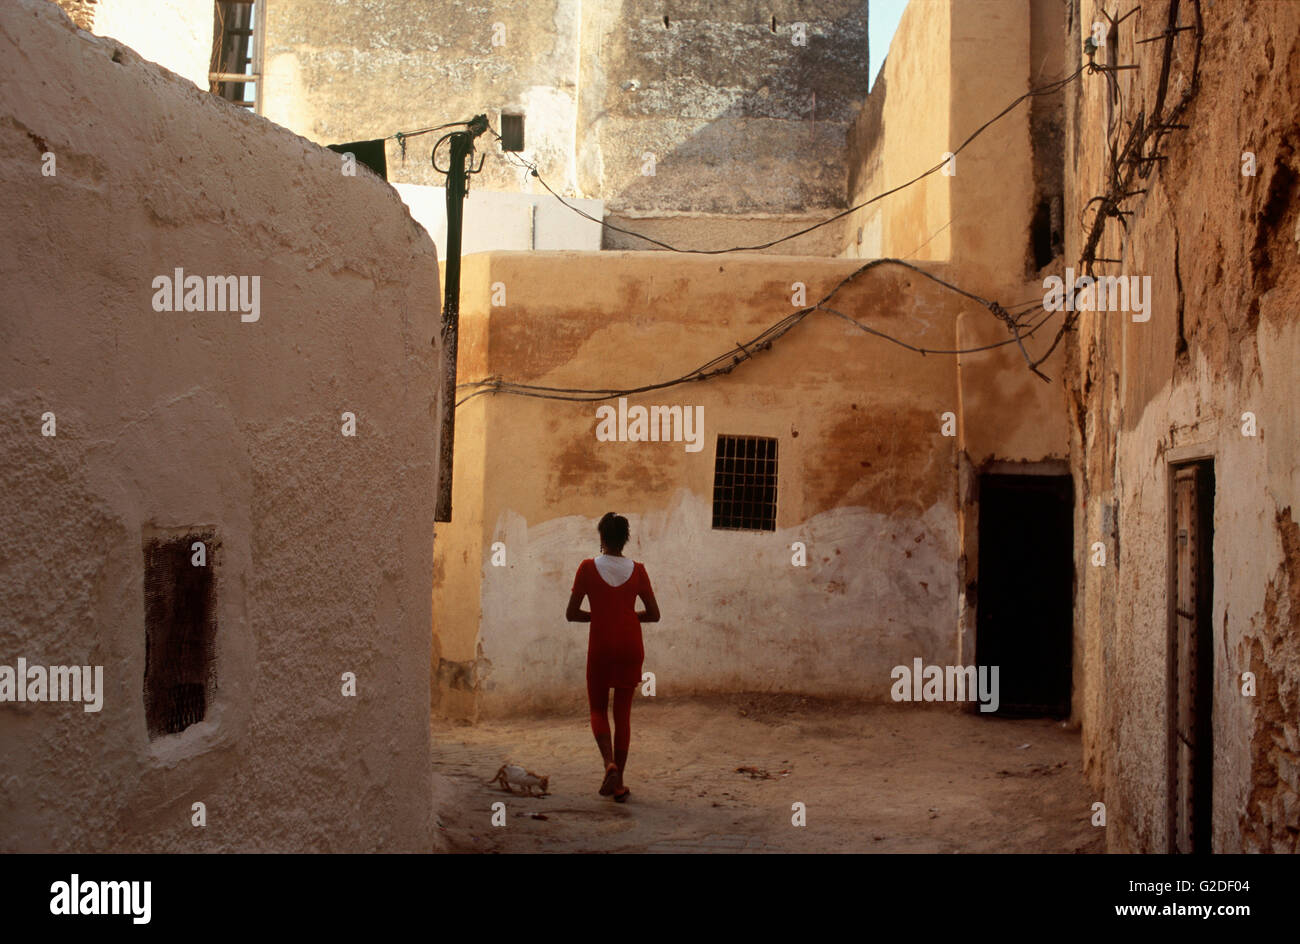 Ragazza e gatto nel vicolo, vista posteriore, Fes, Marocco Foto Stock